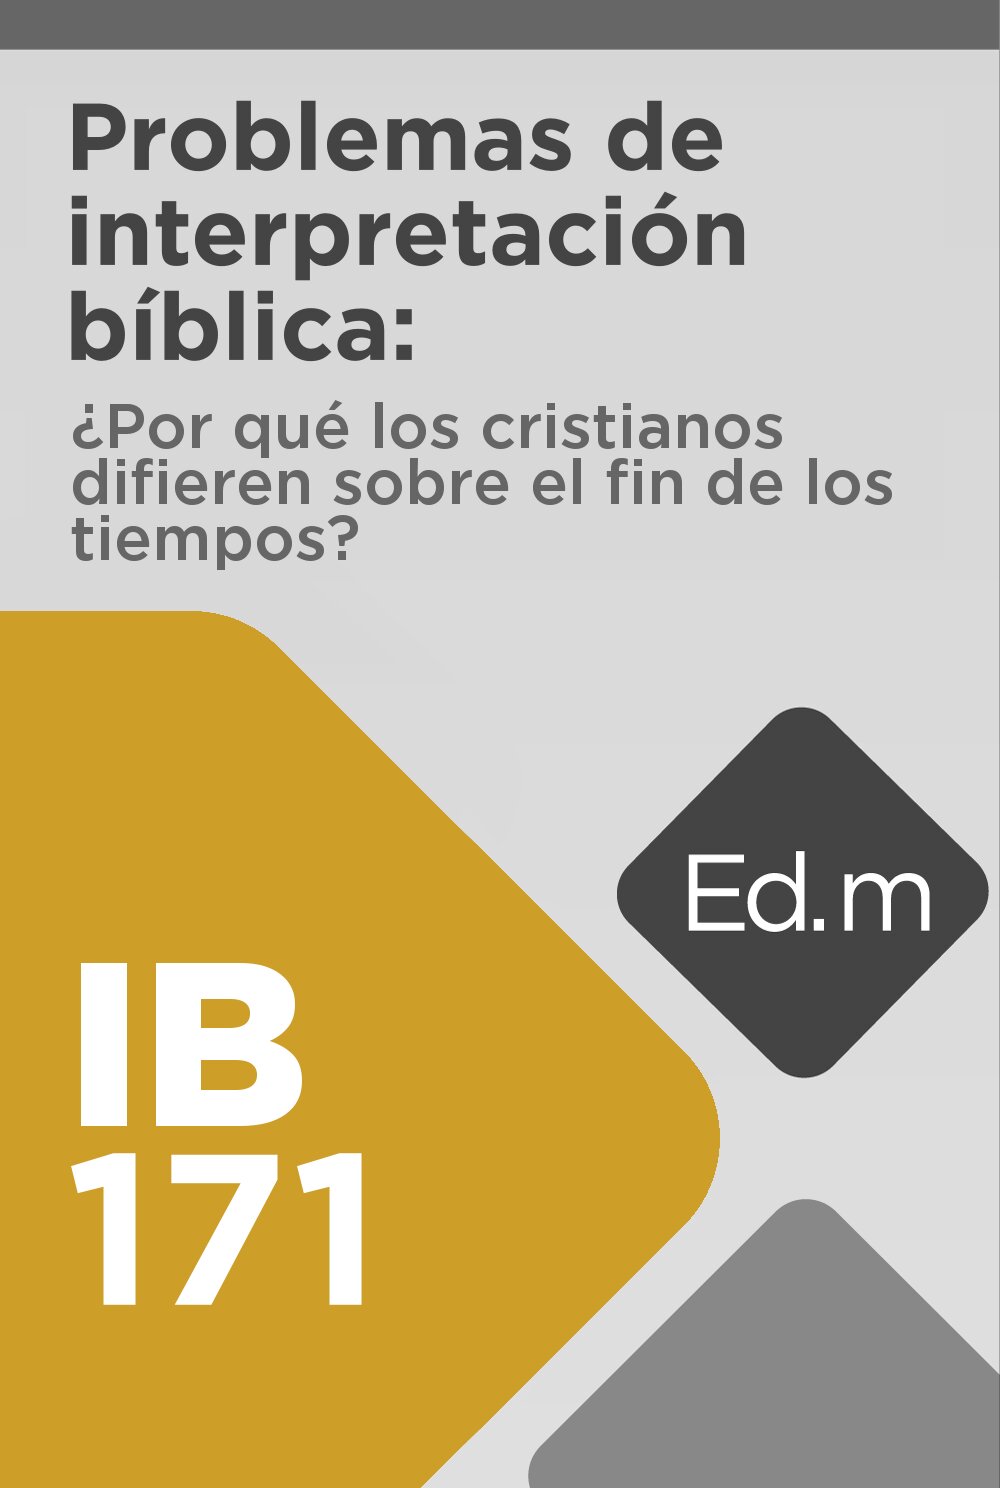 Ed. Móvil: IB171 Problemas de interpretación bíblica ¿Por qué los cristianos difieren sobre el fin de los tiempos?